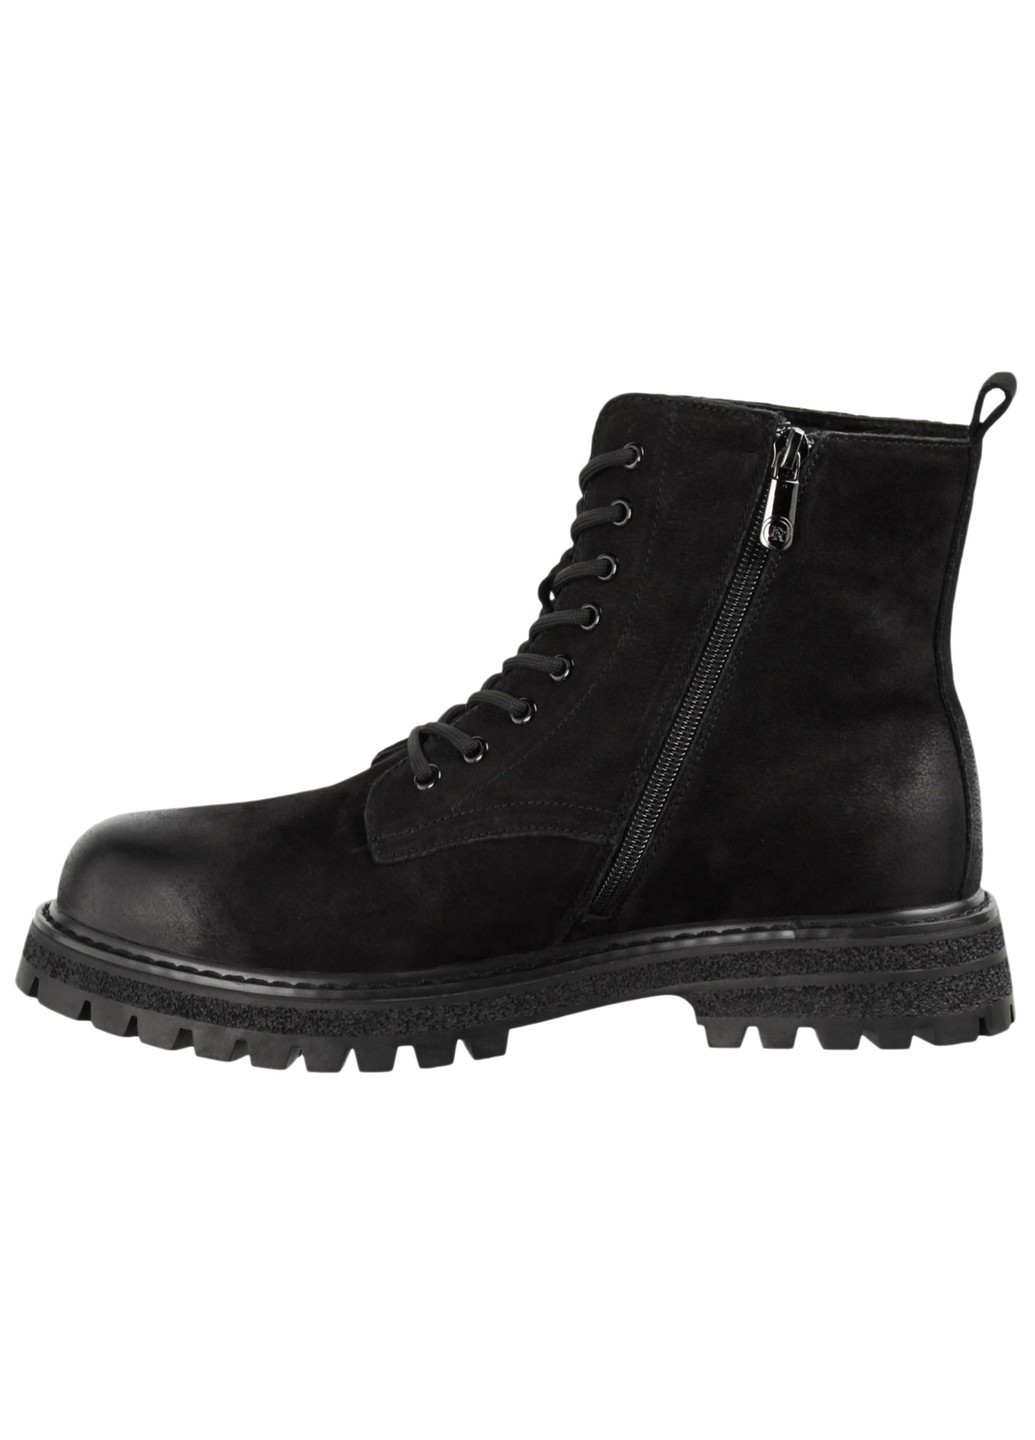 Черные зимние мужские ботинки 199754 Berisstini